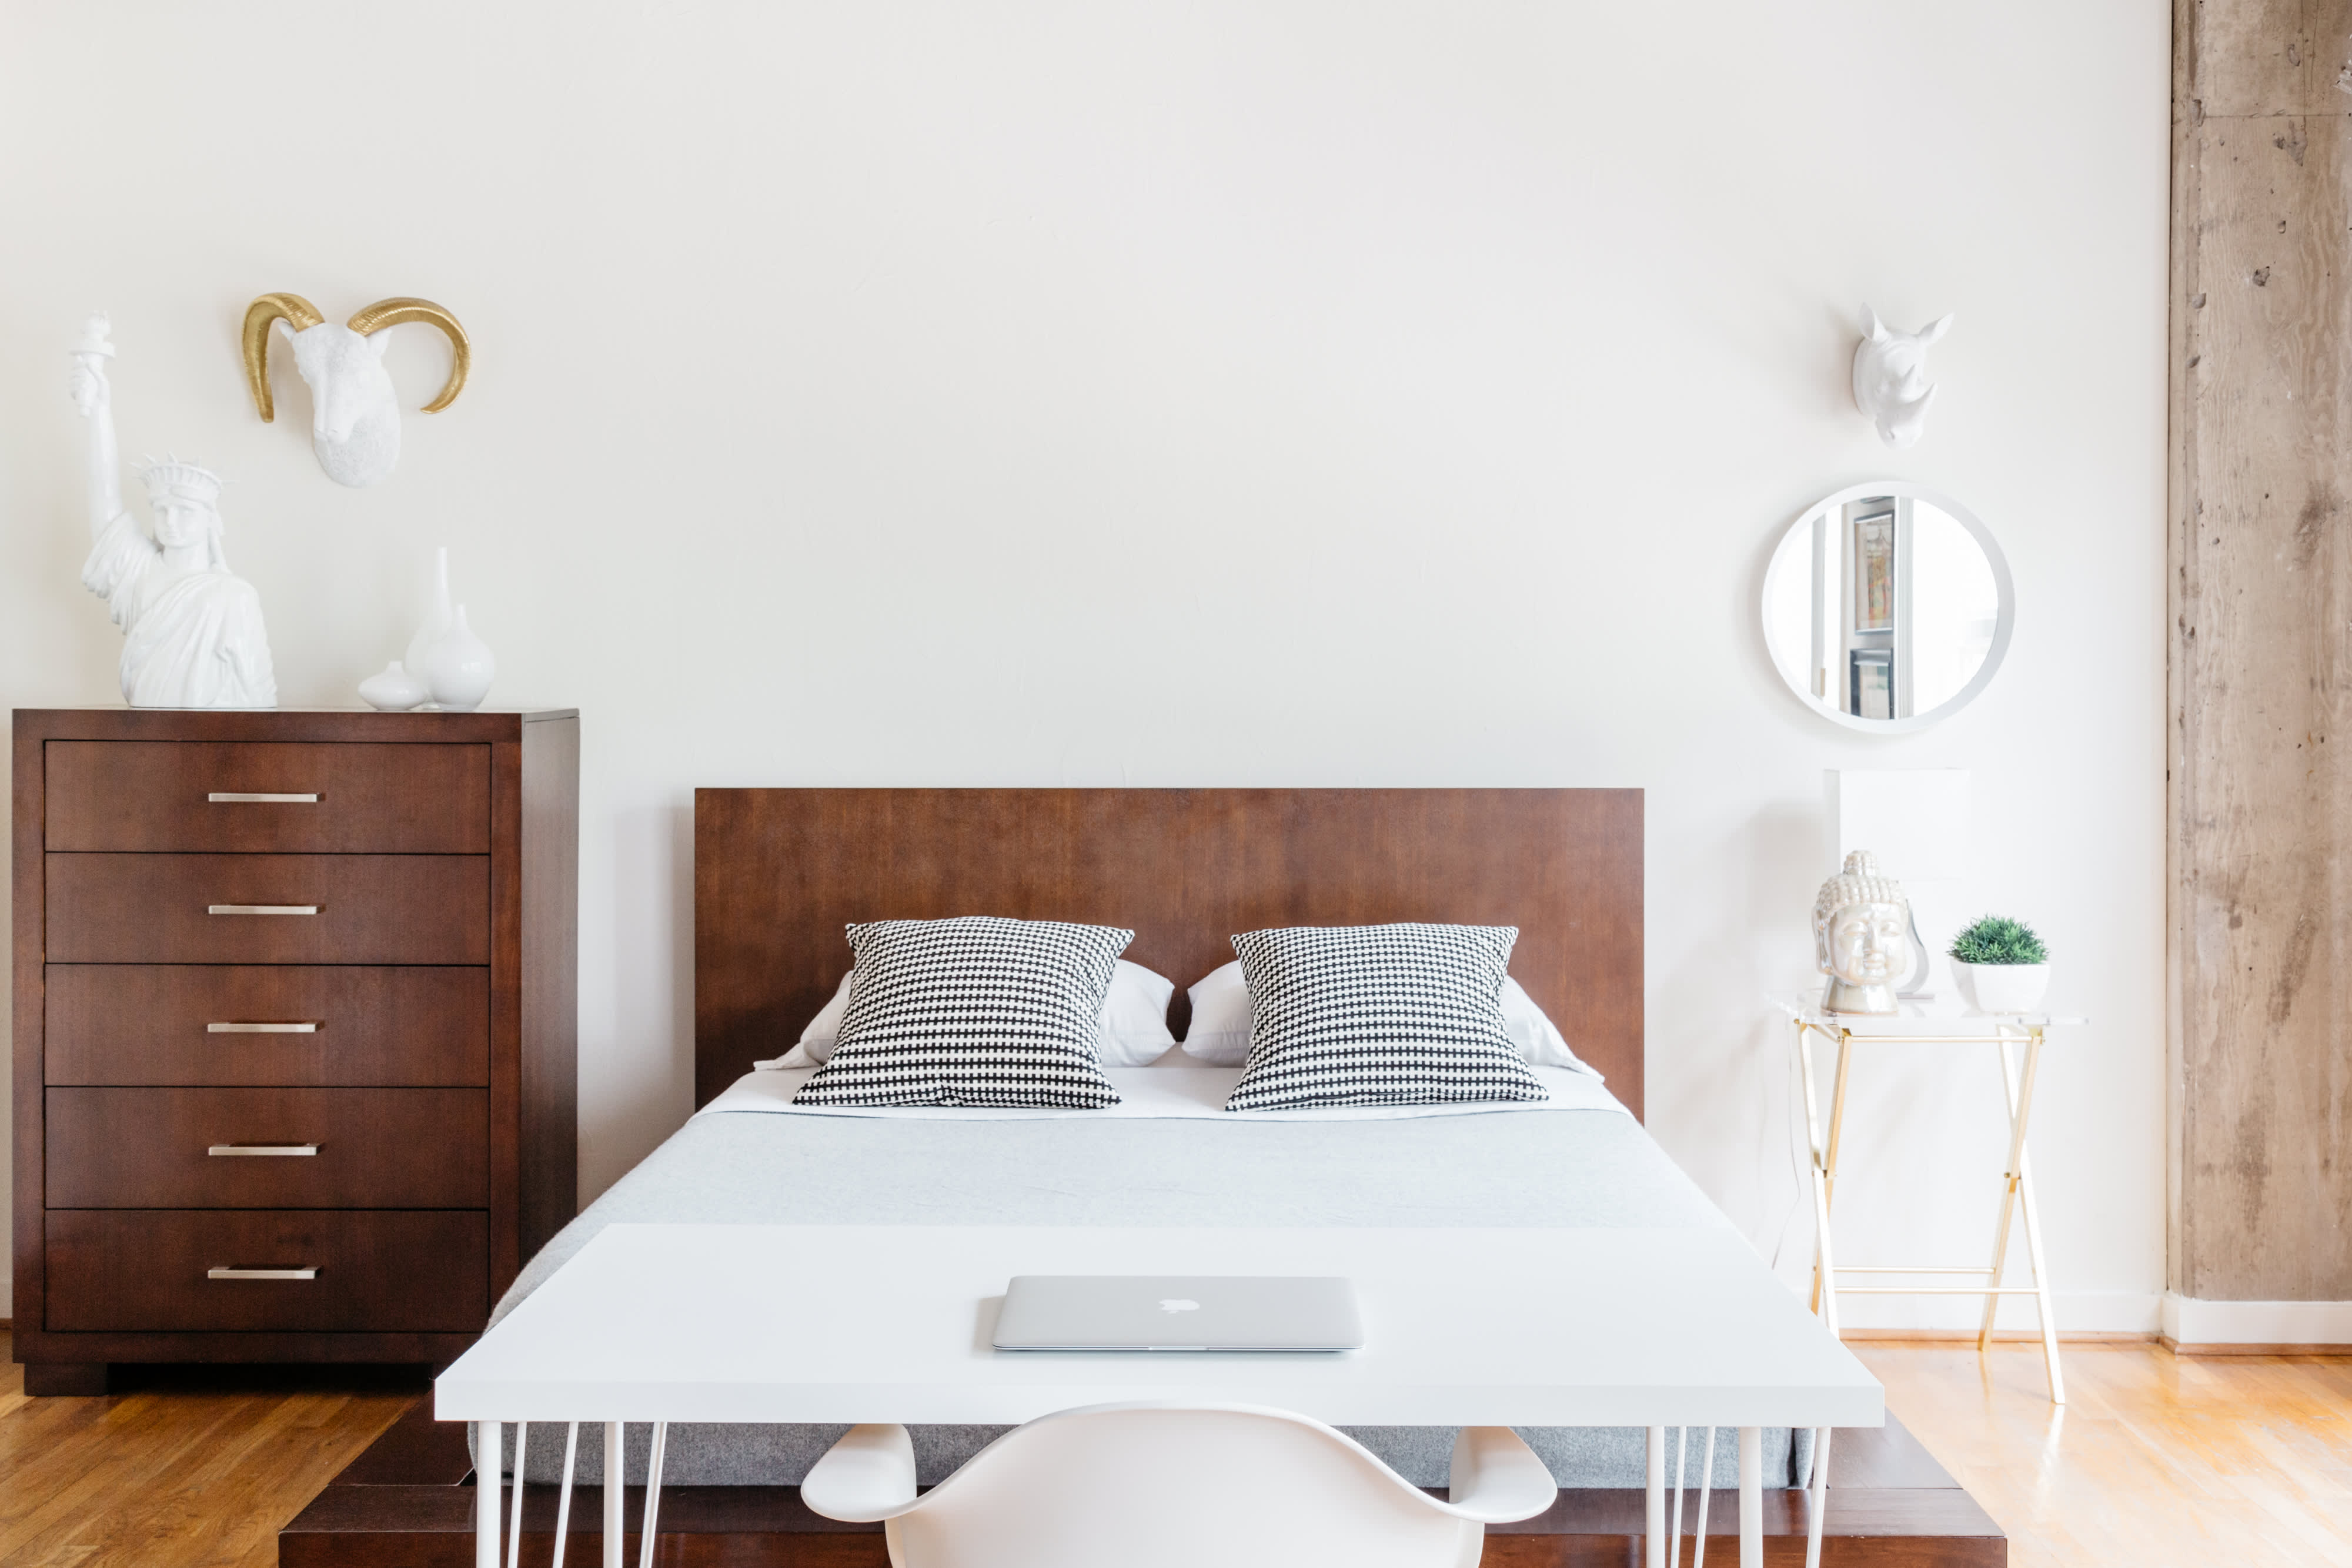  Minimalist  Bedroom  Ideas That Aren t Boring Apartment  